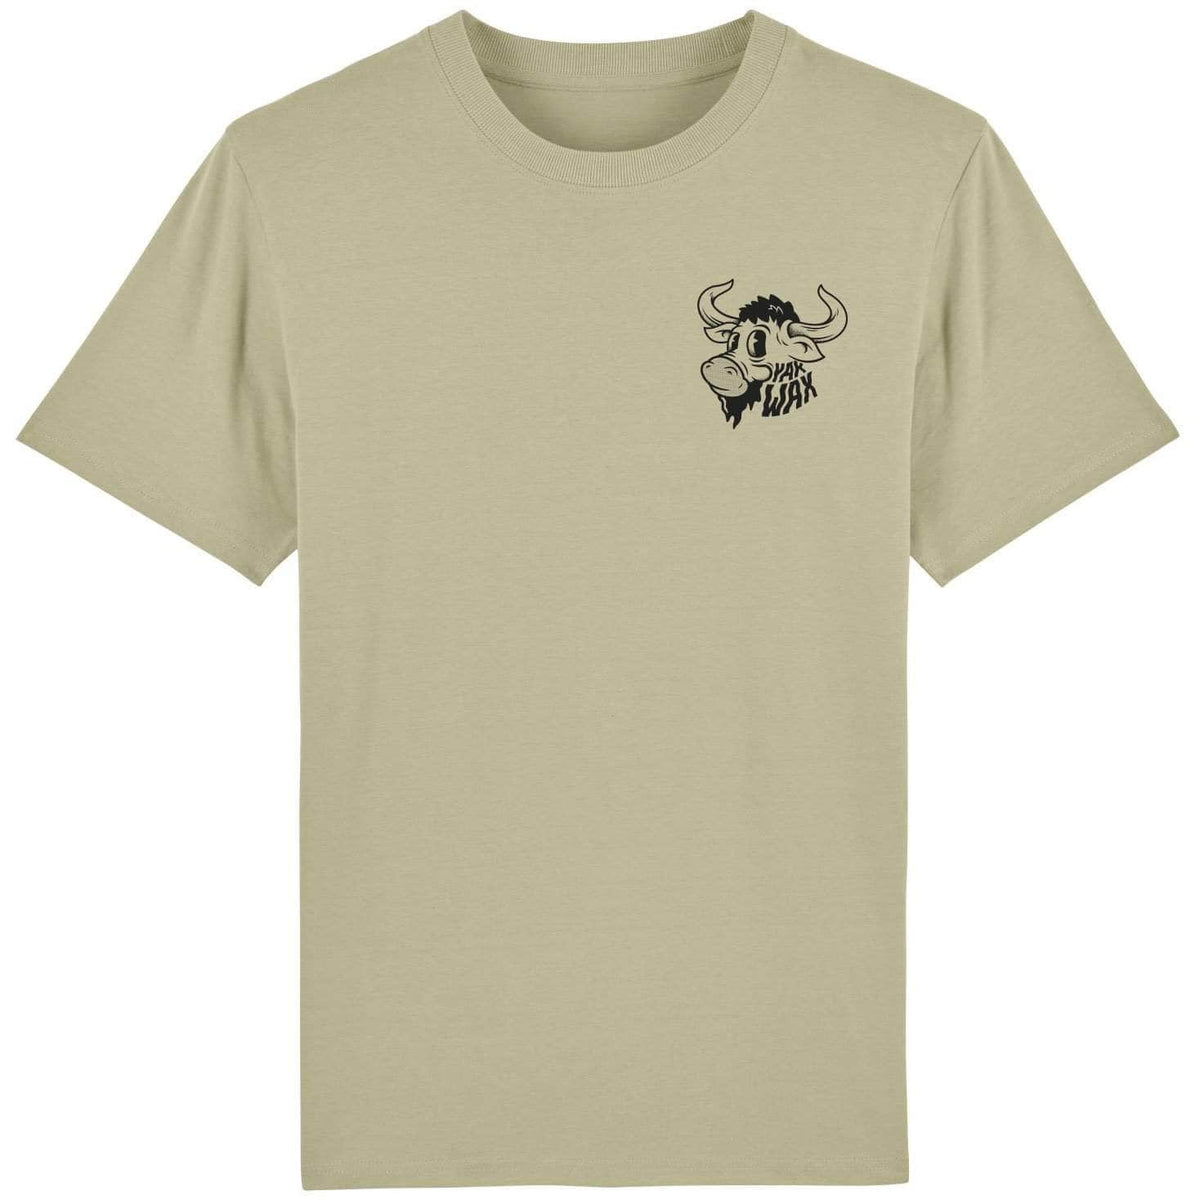 Yakwax Wavy Head T-Shirt Sage - Mens Graphic T-Shirt by Yakwax